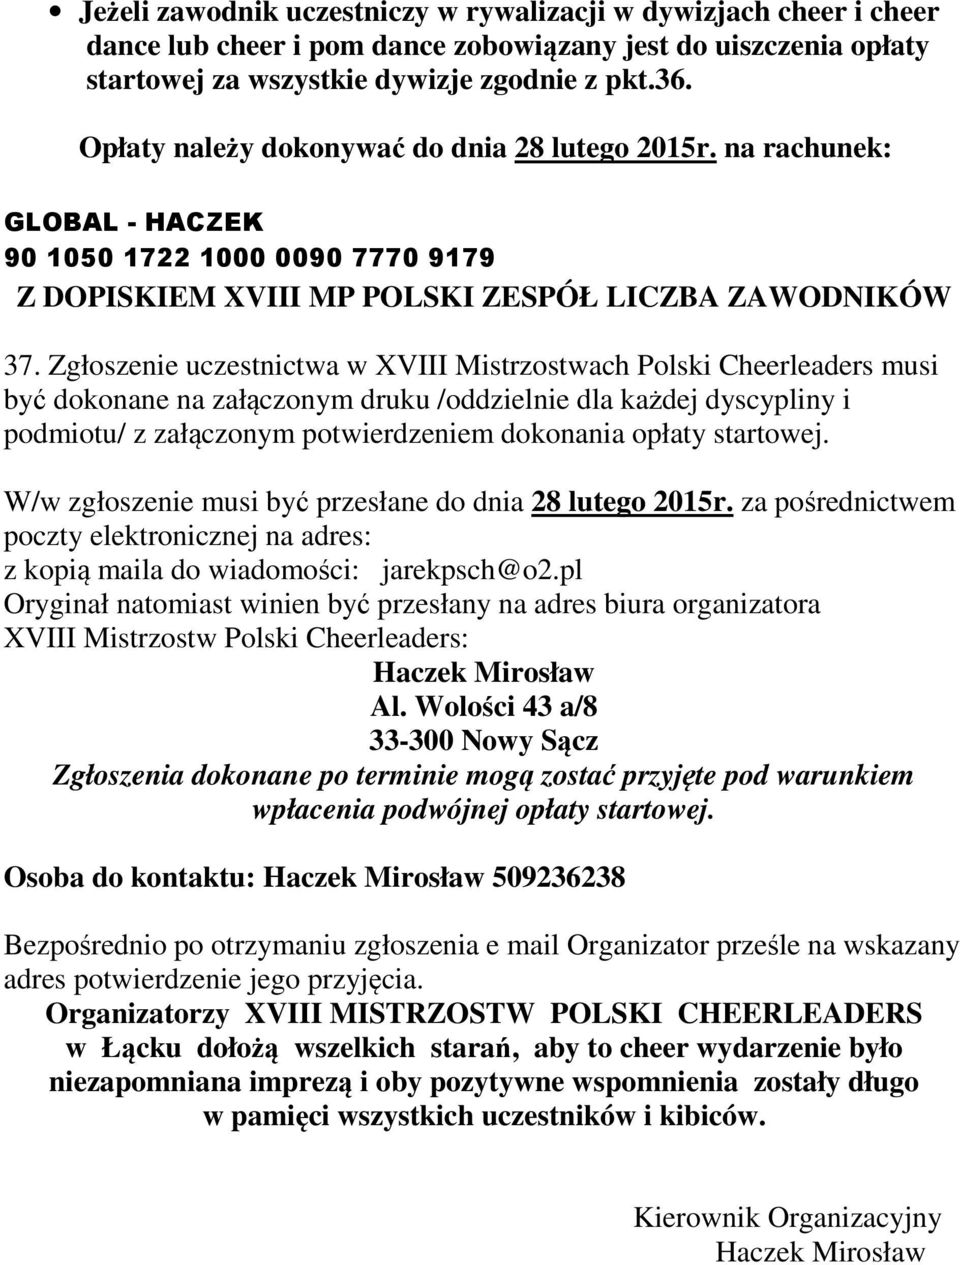 Zgłoszenie uczestnictwa w XVIII Mistrzostwach Polski Cheerleaders musi być dokonane na załączonym druku /oddzielnie dla każdej dyscypliny i podmiotu/ z załączonym potwierdzeniem dokonania opłaty